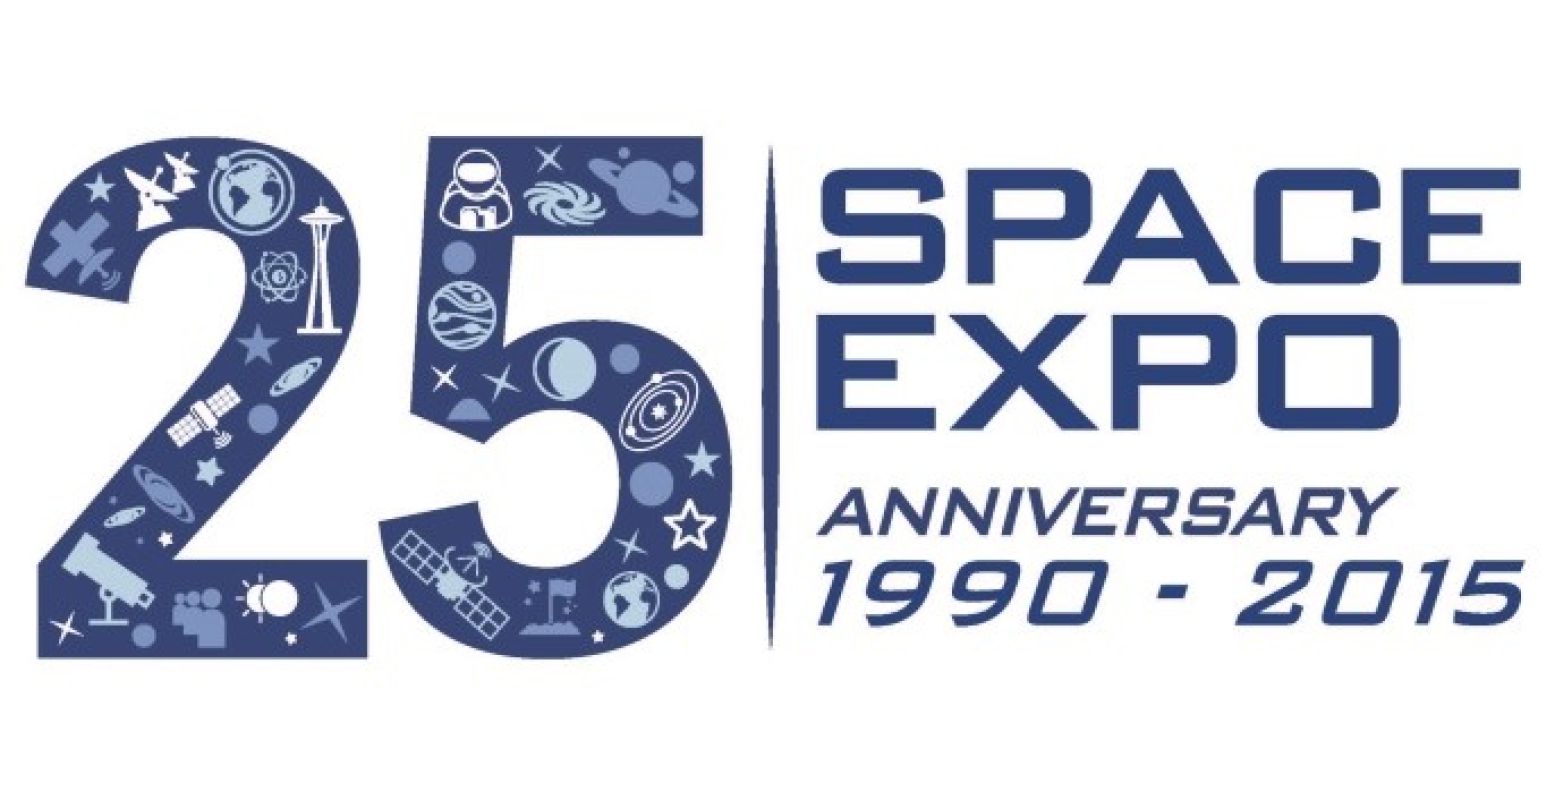 Ook  Space Expo  bestaat vijfentwintig jaar. Dubbel reden voor feestje, dus!